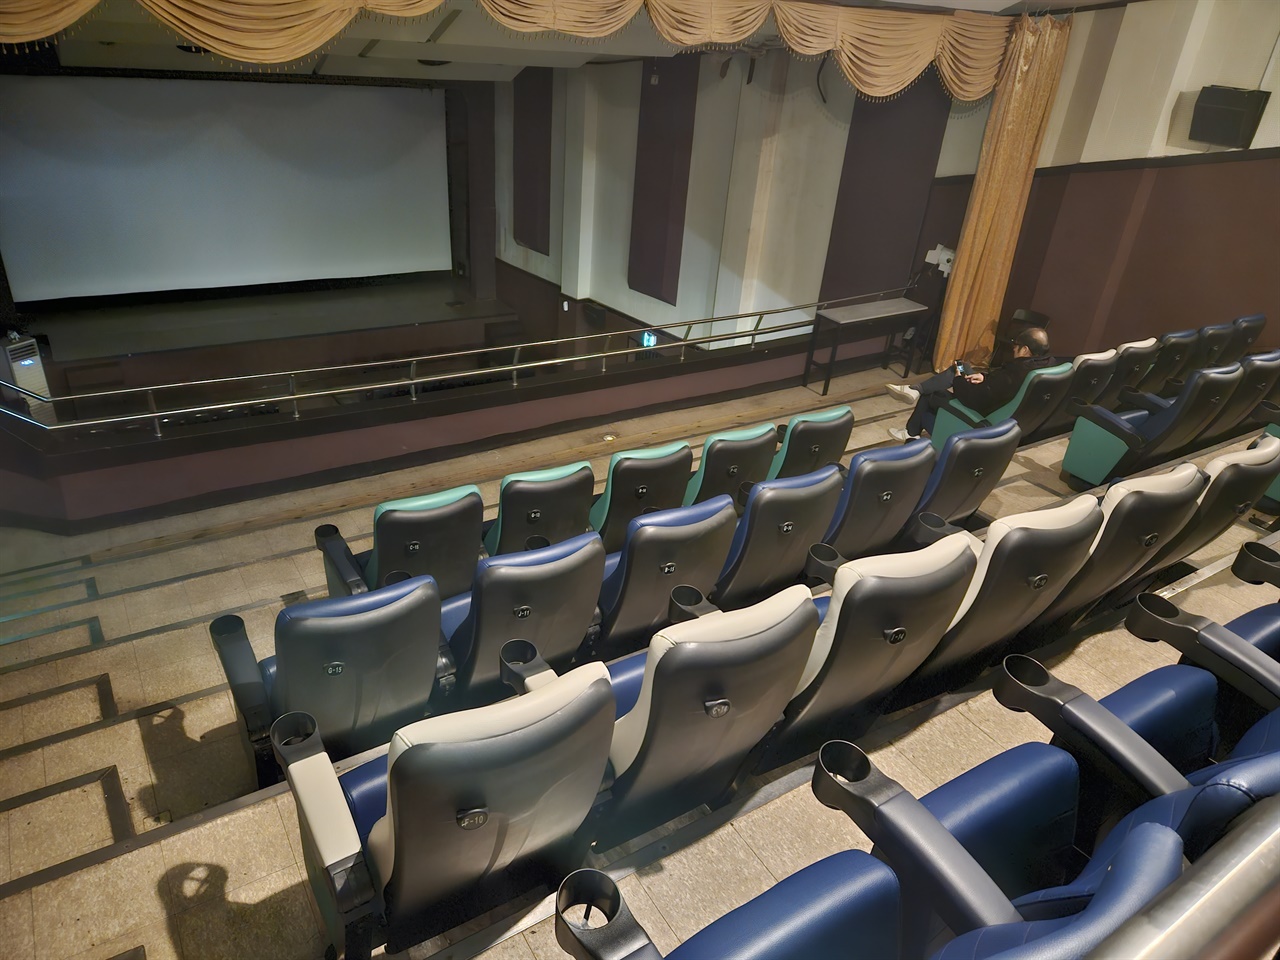  미림극장 2층 객석. 인근의 CGV 영화관이 철거할 때 의자를 기증받아 마련했다.